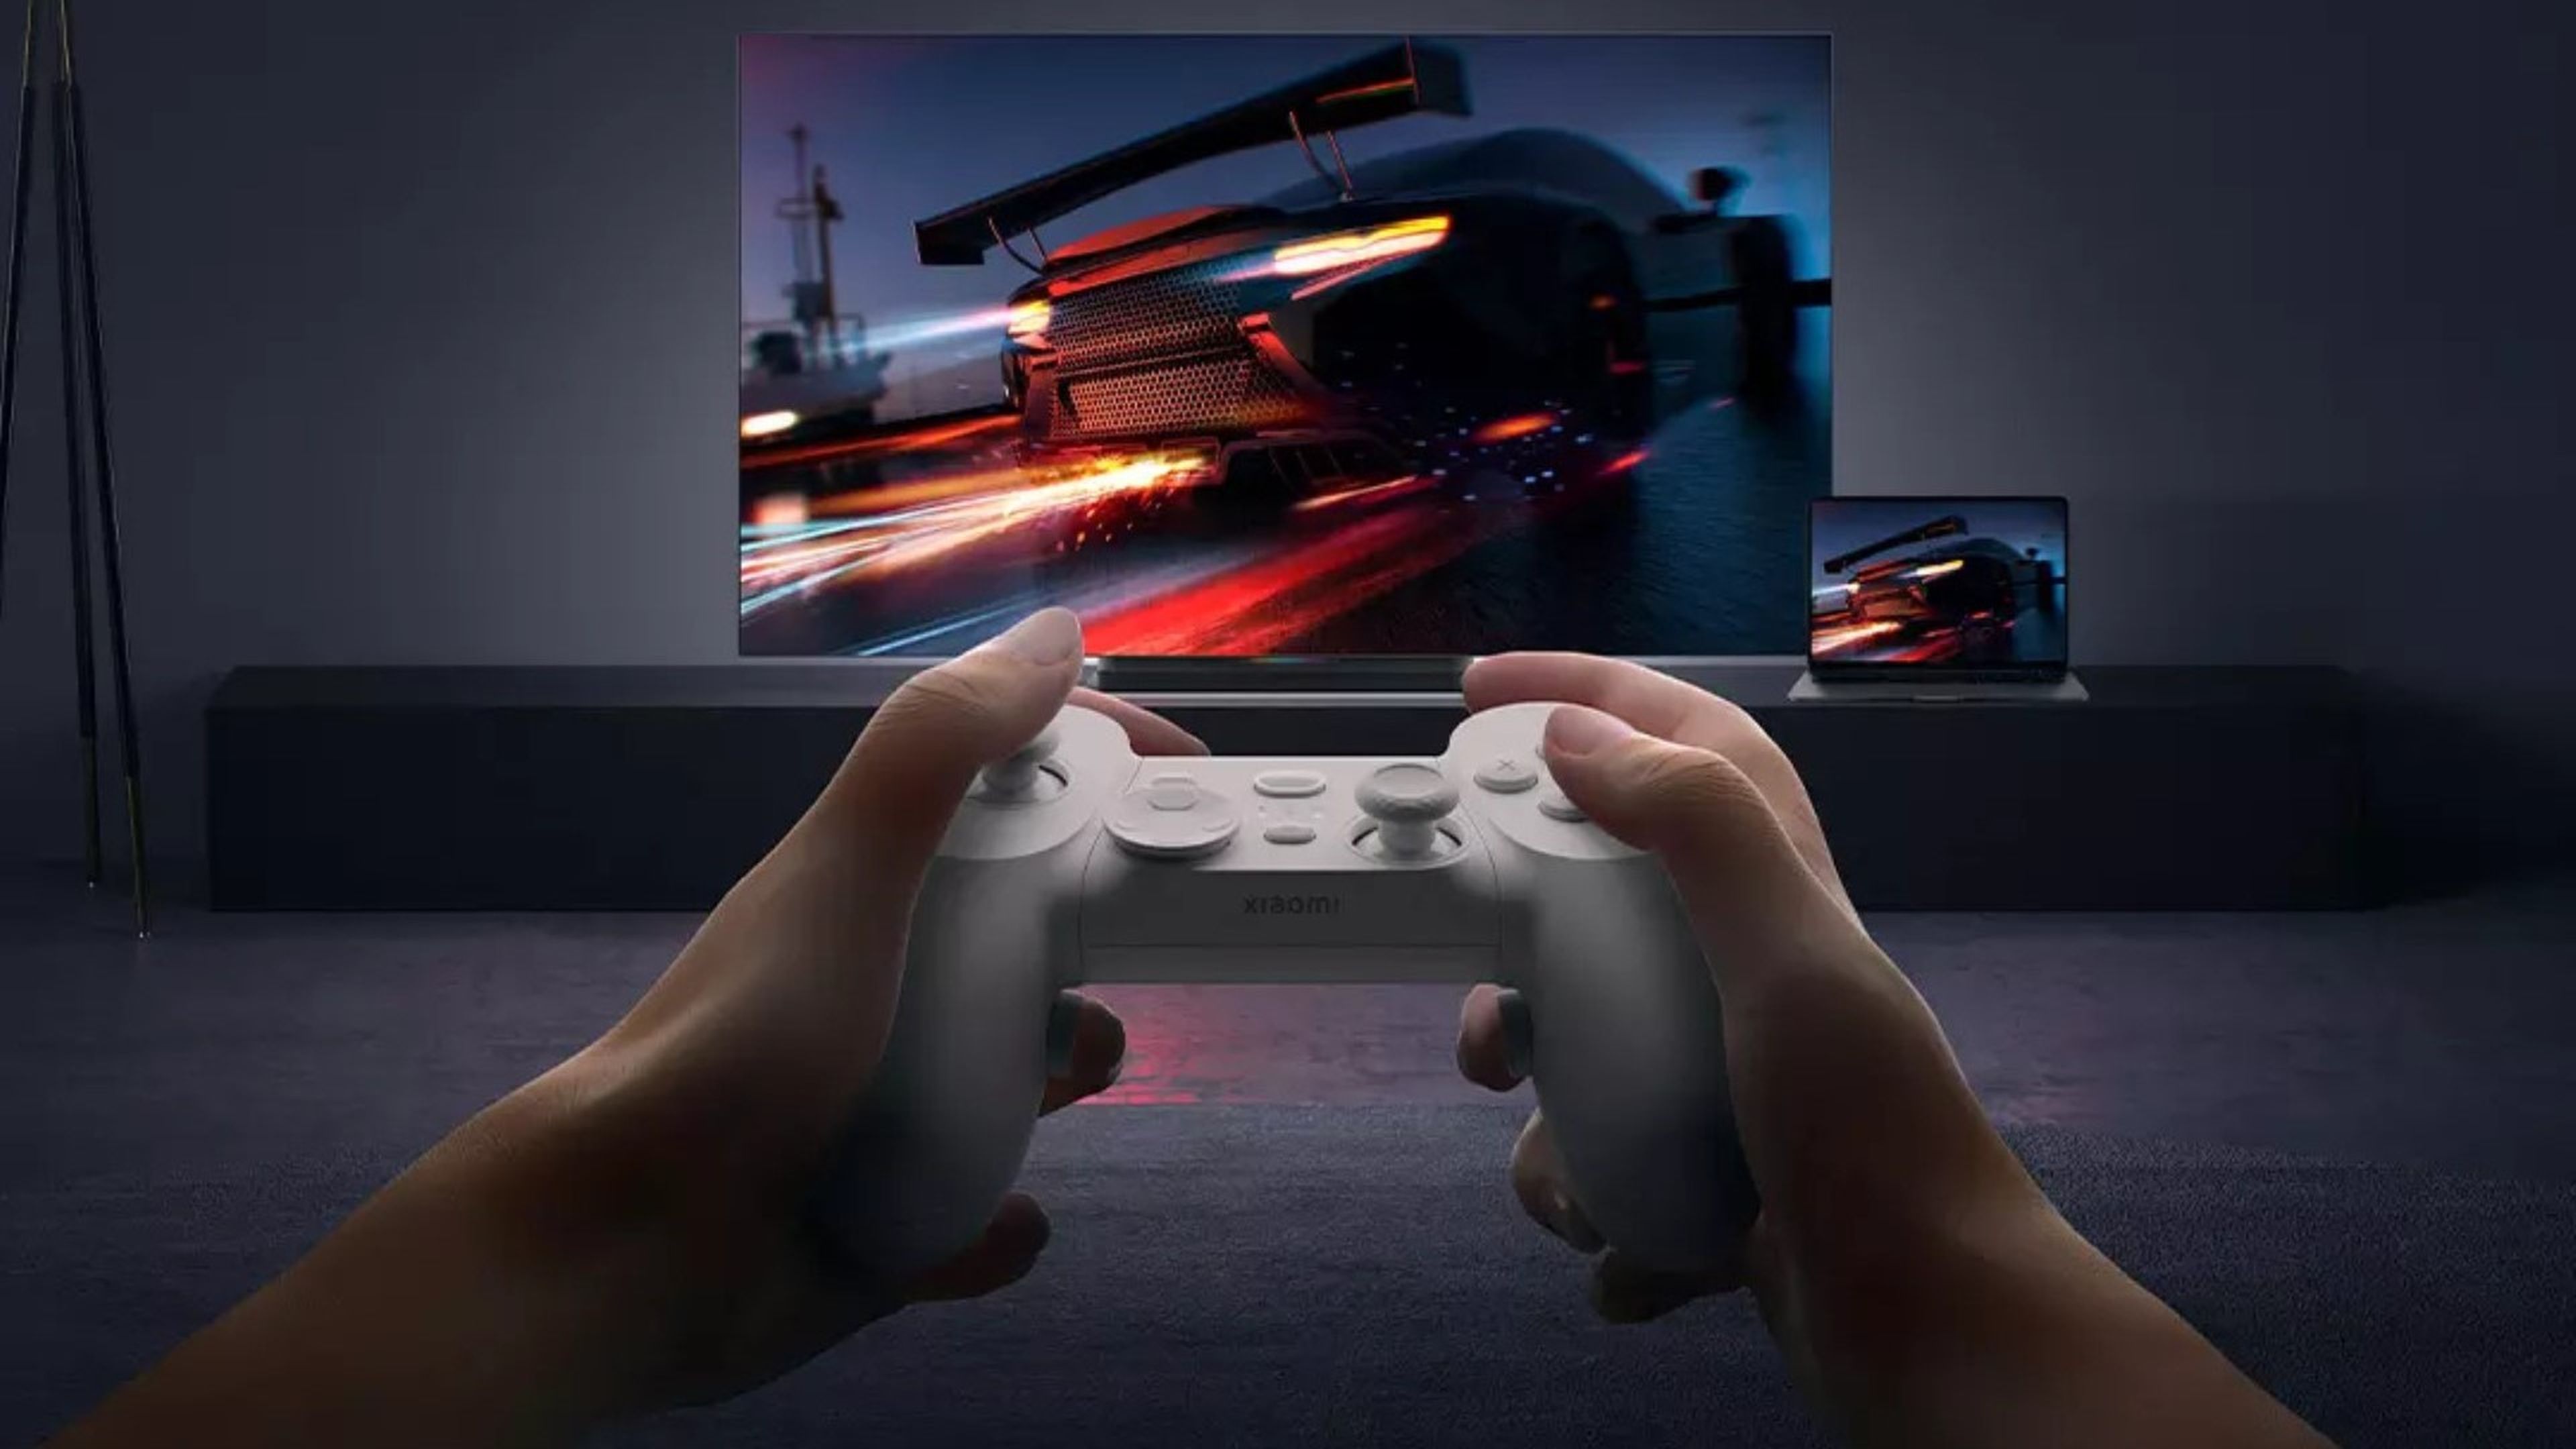 Xiaomi prepara un mando parecido al de PS4 para jugar en PC y